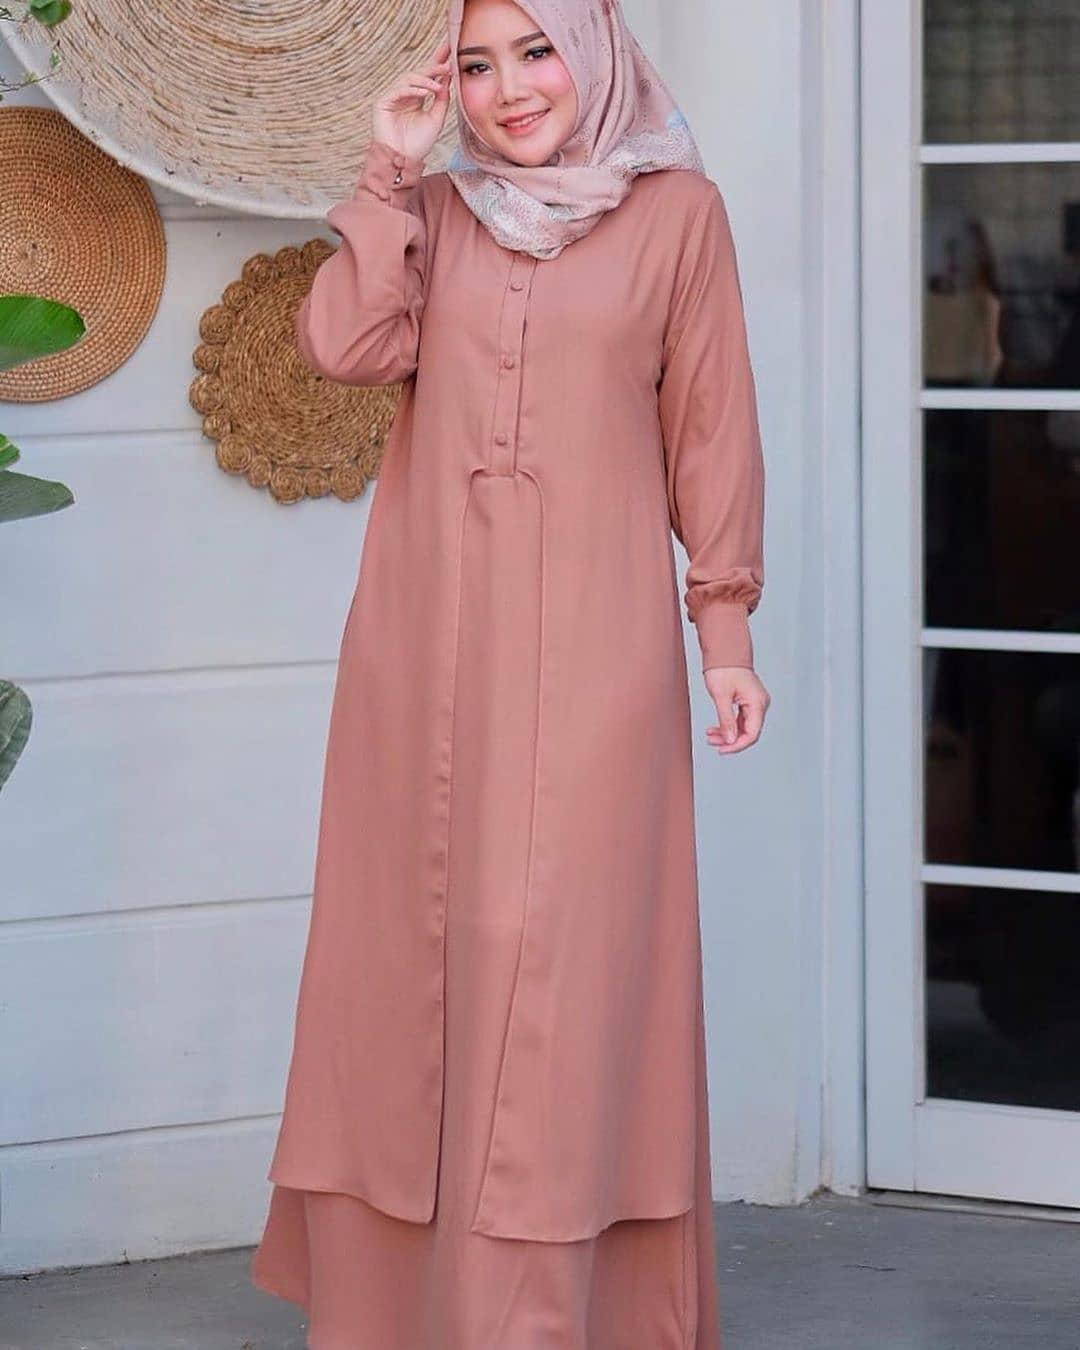 Baju Muslim Modern Gamis JANNAH DRESS Moscrepe Baju Gamis Terusan Wanita Paling Laris Dan Trendy Baju Panjang Polos Muslim Dress Pesta Terbaru Maxi Muslimah Termurah Pakaian Modis Simple Casual Terbaru 2019